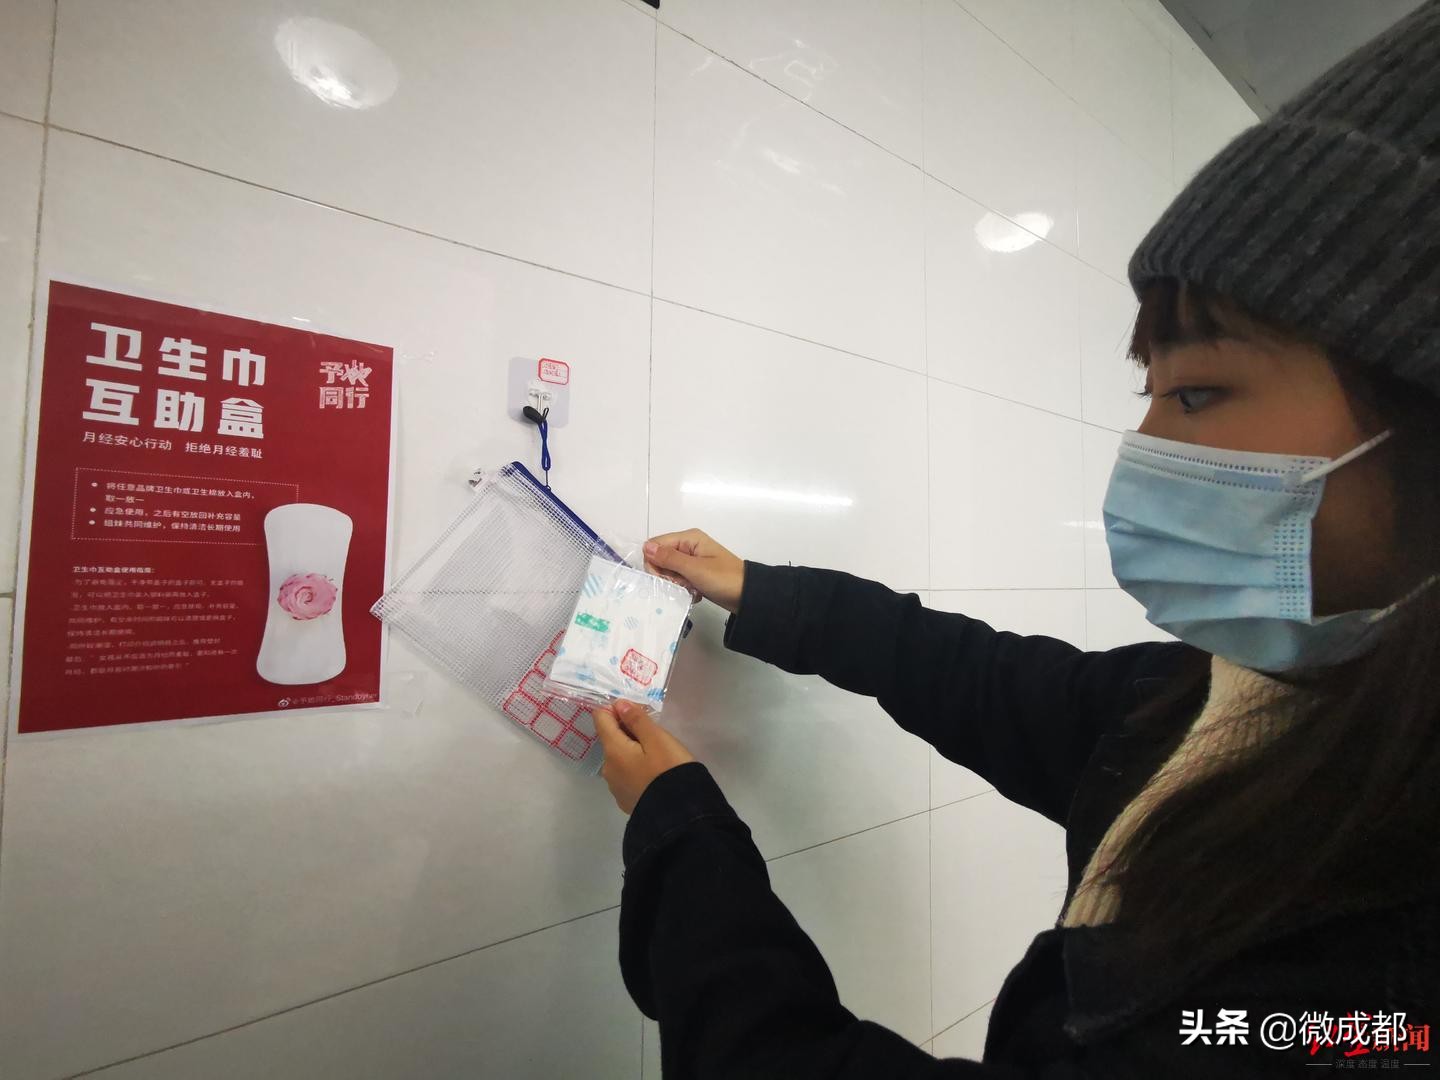 成都全搜索：成都一高校学生发起“卫生巾互助盒 ”活动 让女生与“尴尬”说拜拜-成医新闻网